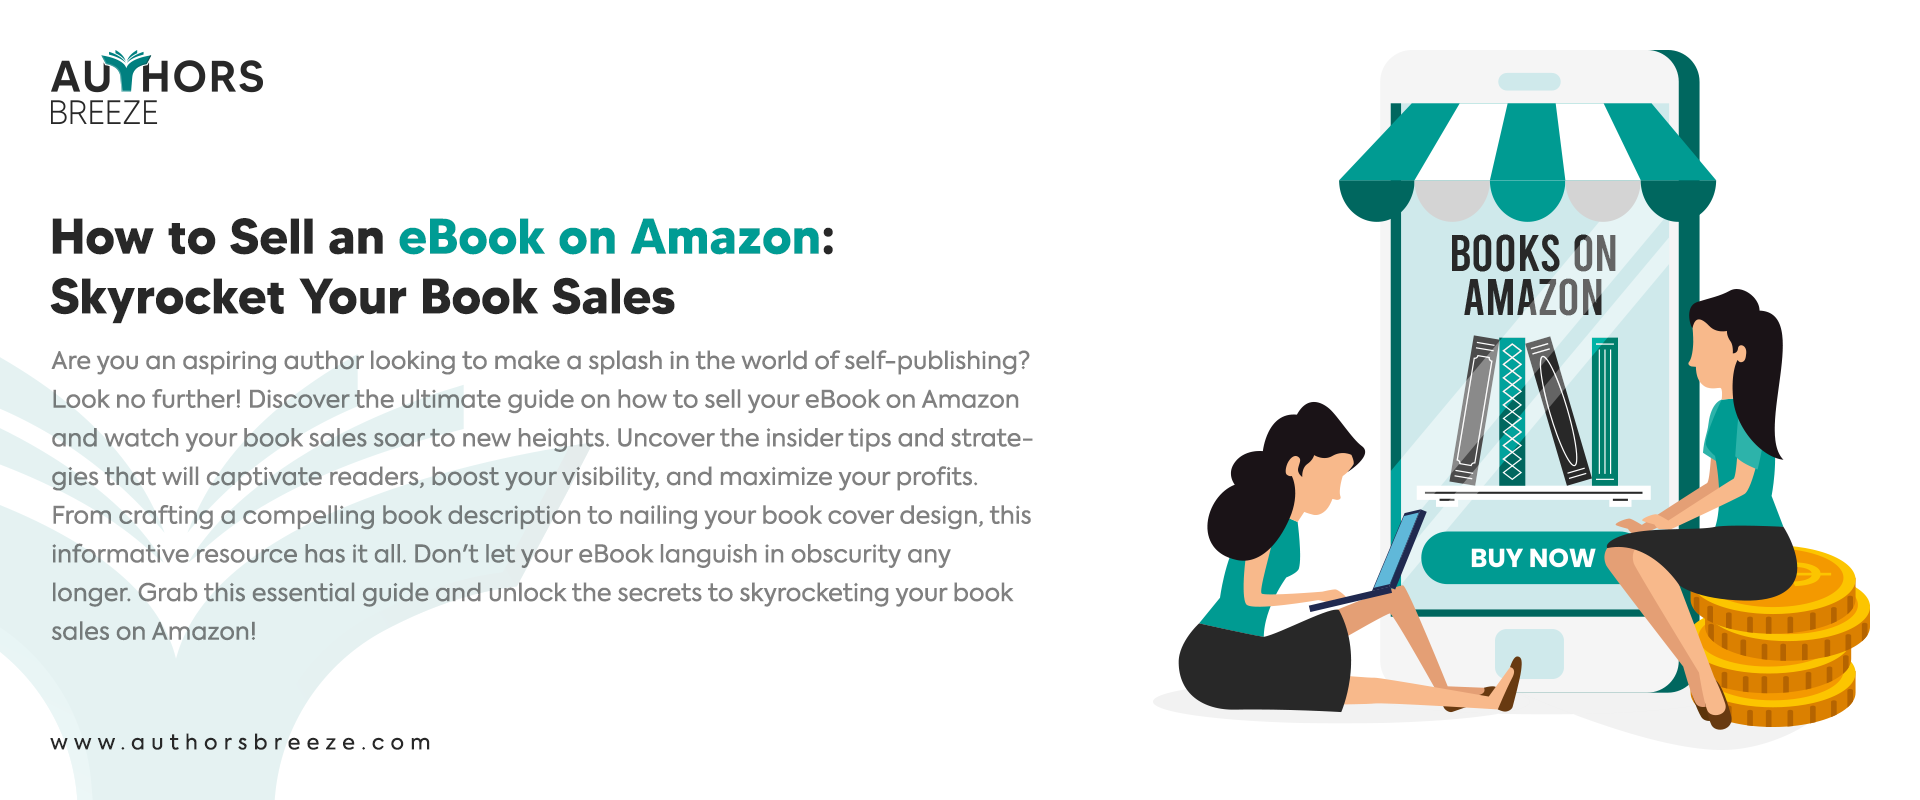 authorsbreeze-eBook on Amazon